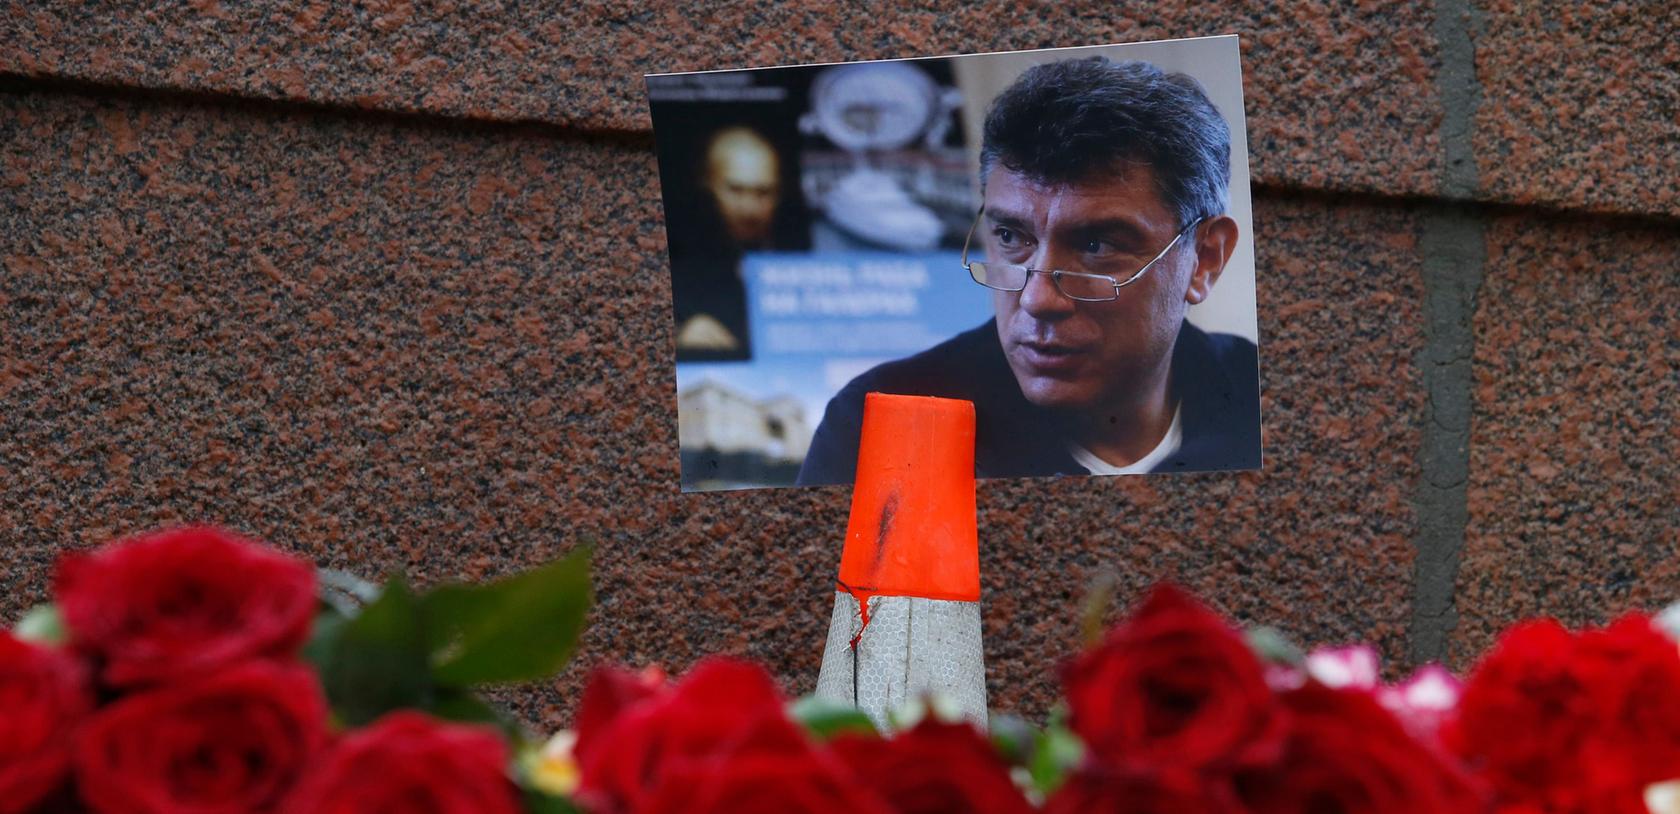 Der russische Oppositionspolitiker Boris Nemzow ist am späten Freitagabend in Moskau in unmittelbarer Nähe des Kremls auf offener Straße hinterrücks erschossen worden.